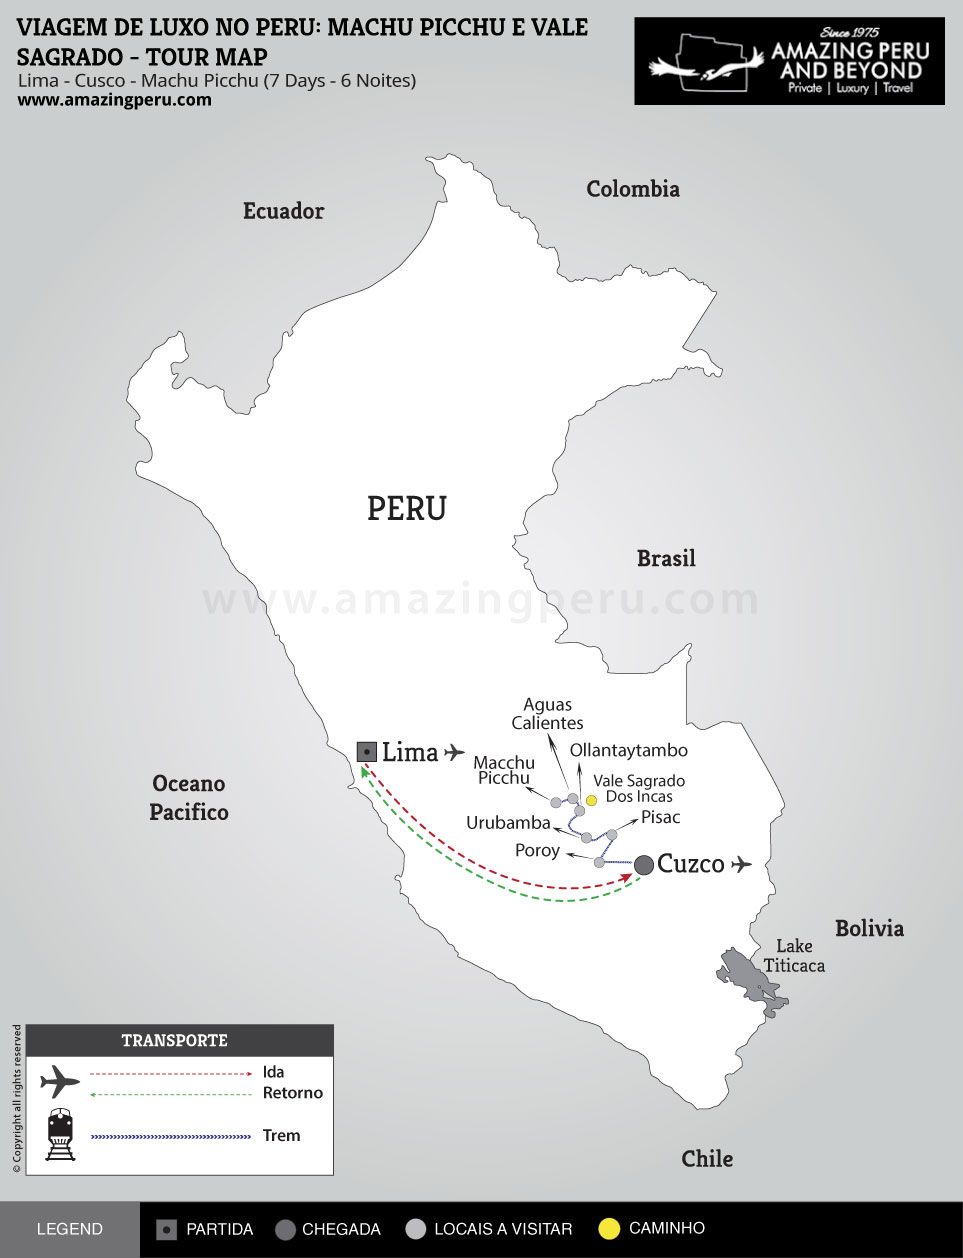 Viagem de luxo no Peru: Machu Picchu e Vale Sagrado - 7 days / 6 nights.